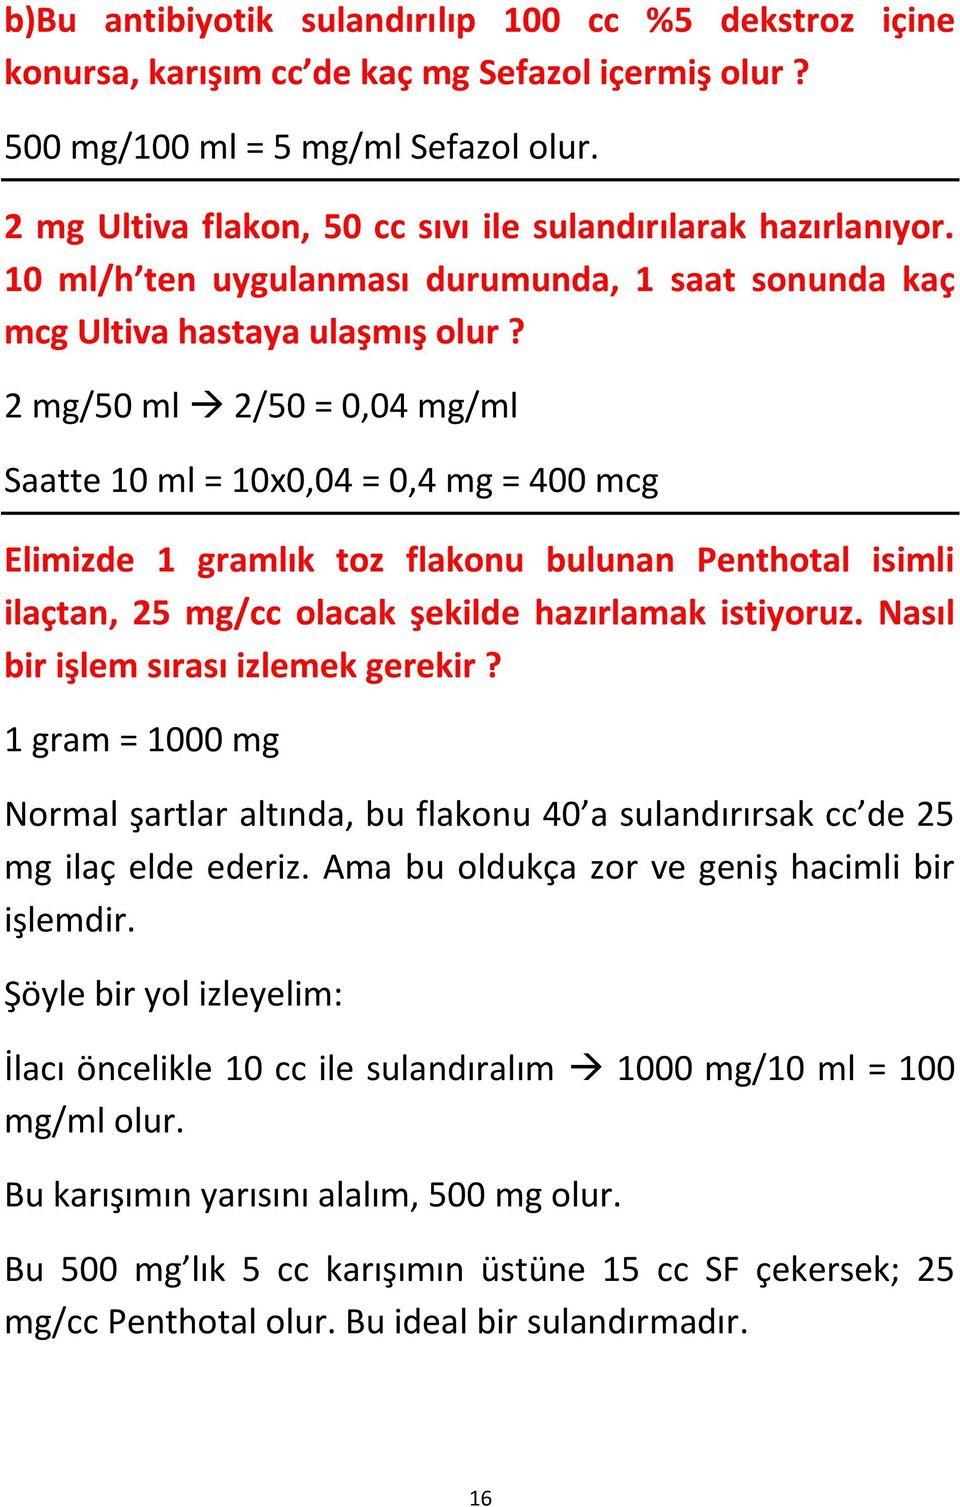 2 mg/50 ml 2/50 = 0,04 mg/ml Saatte 10 ml = 10x0,04 = 0,4 mg = 400 mcg Elimizde 1 gramlık toz flakonu bulunan Penthotal isimli ilaçtan, 25 mg/cc olacak şekilde hazırlamak istiyoruz.